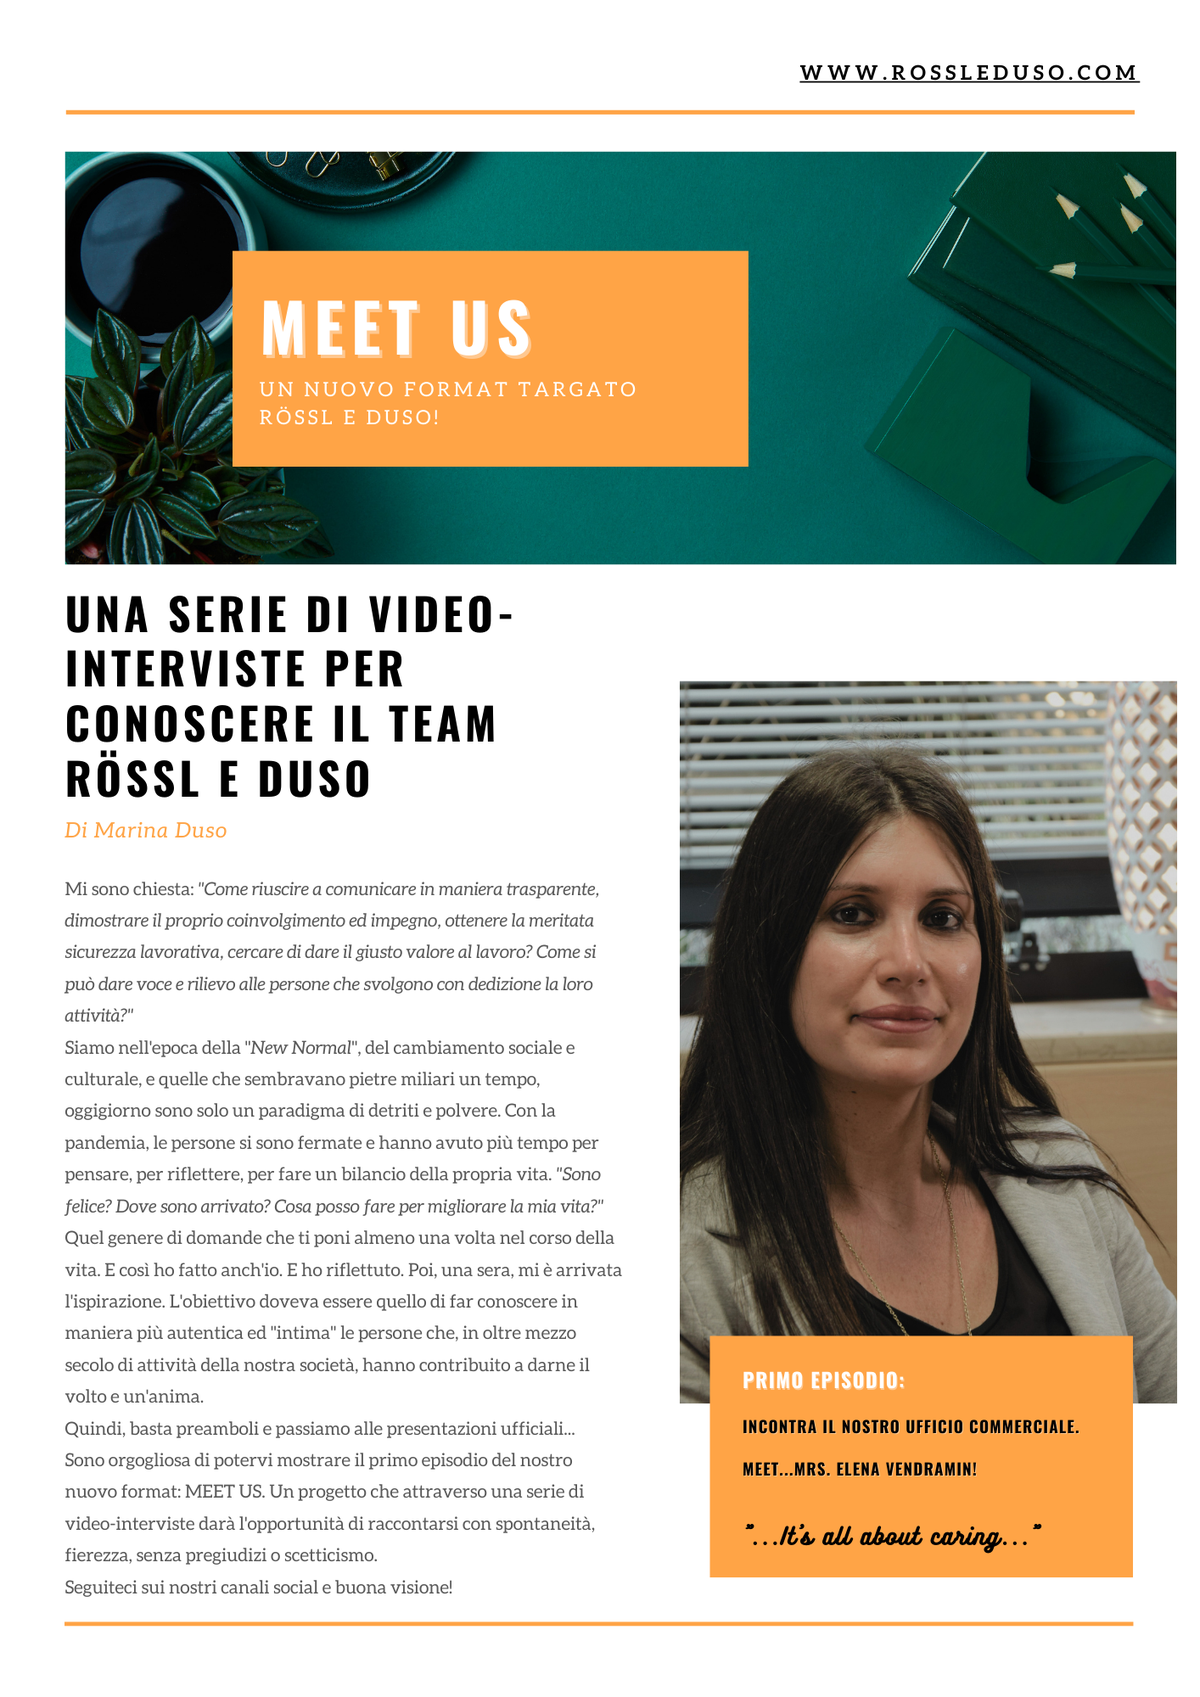 Articolo su Meet us, il nuovo format di Rössl e Duso. Vieni a conoscere il nostro staff attraverso una serie di video interviste.